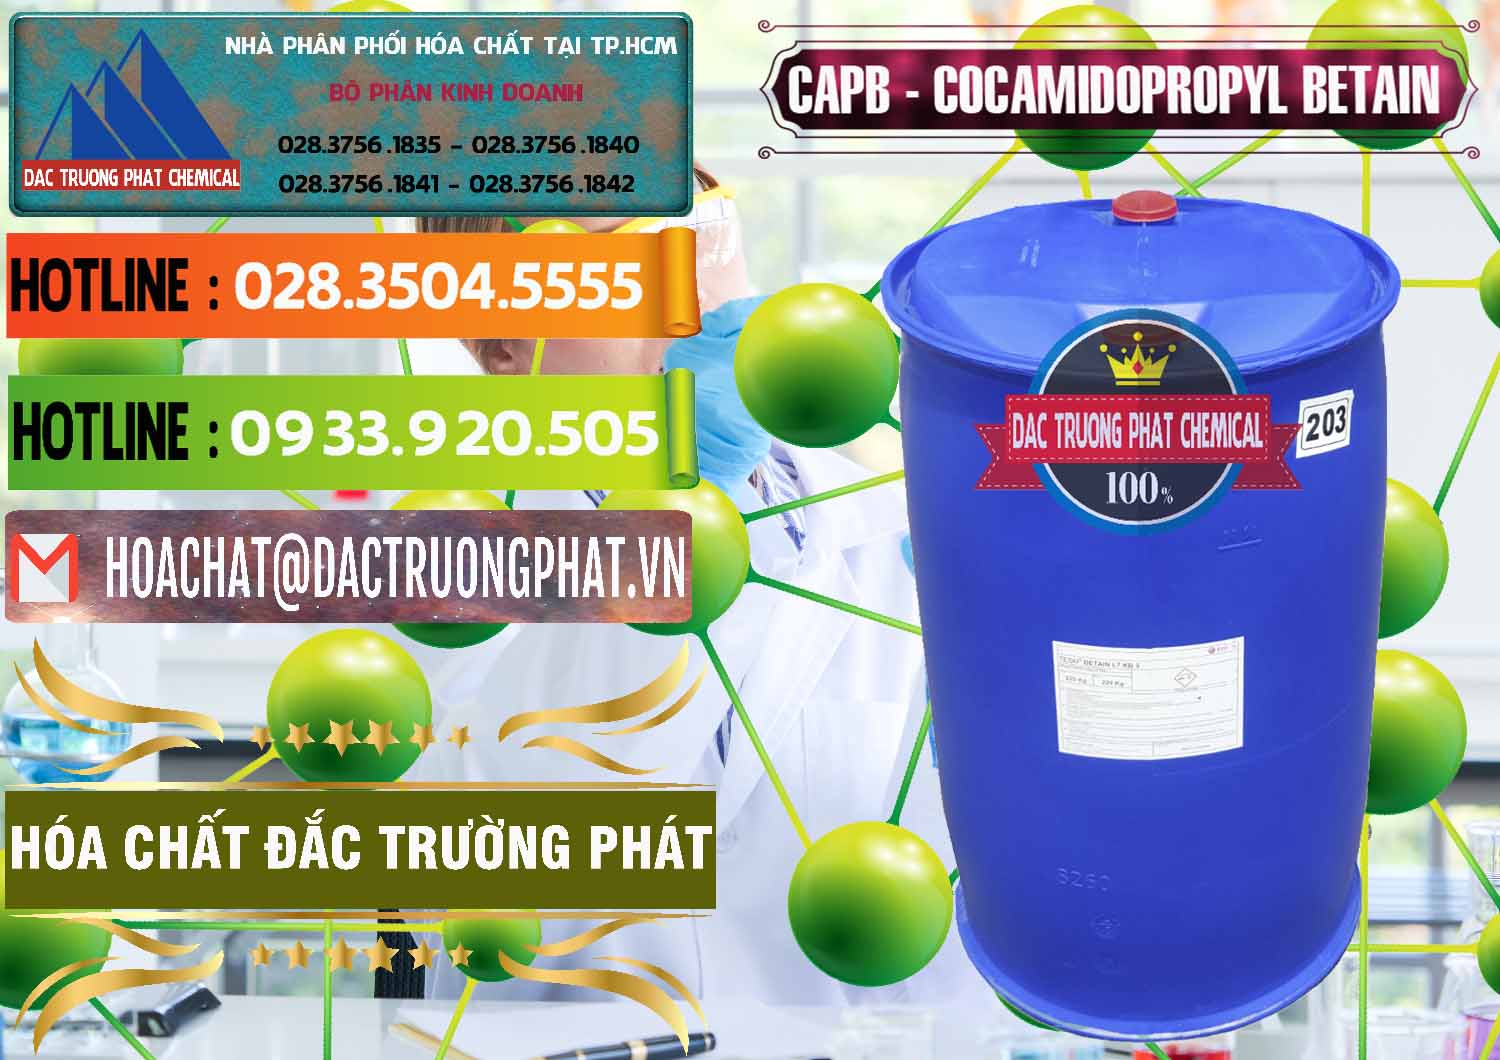 Nhà cung cấp ( bán ) Cocamidopropyl Betaine - CAPB Tego Indonesia - 0327 - Công ty phân phối & cung cấp hóa chất tại TP.HCM - cungcaphoachat.com.vn